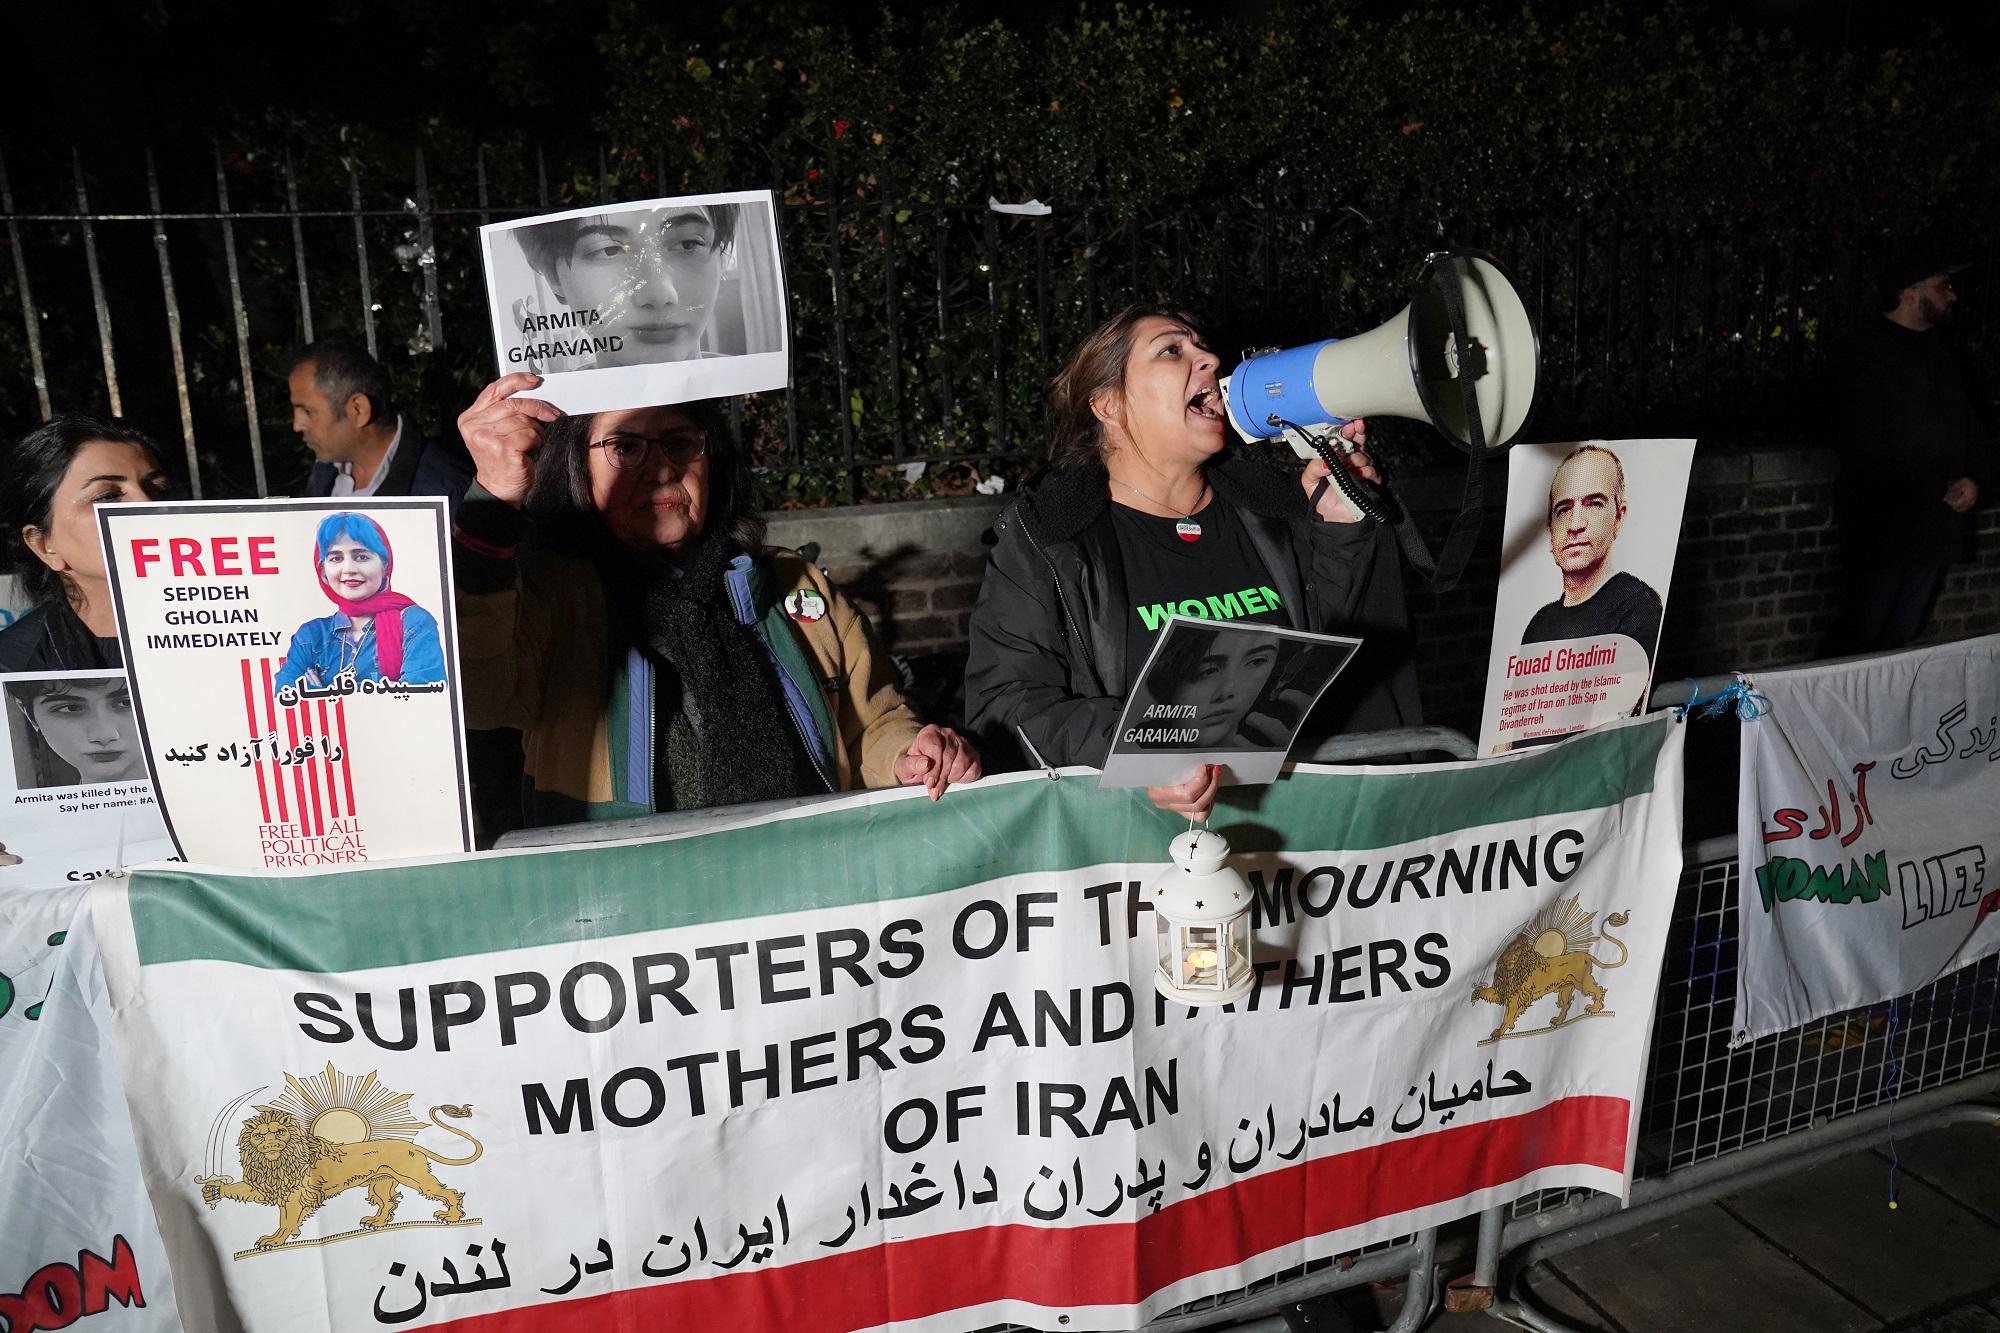 Iran presiede il Forum sui diritti umani: dagli attivisti alla politica, esplode la protesta